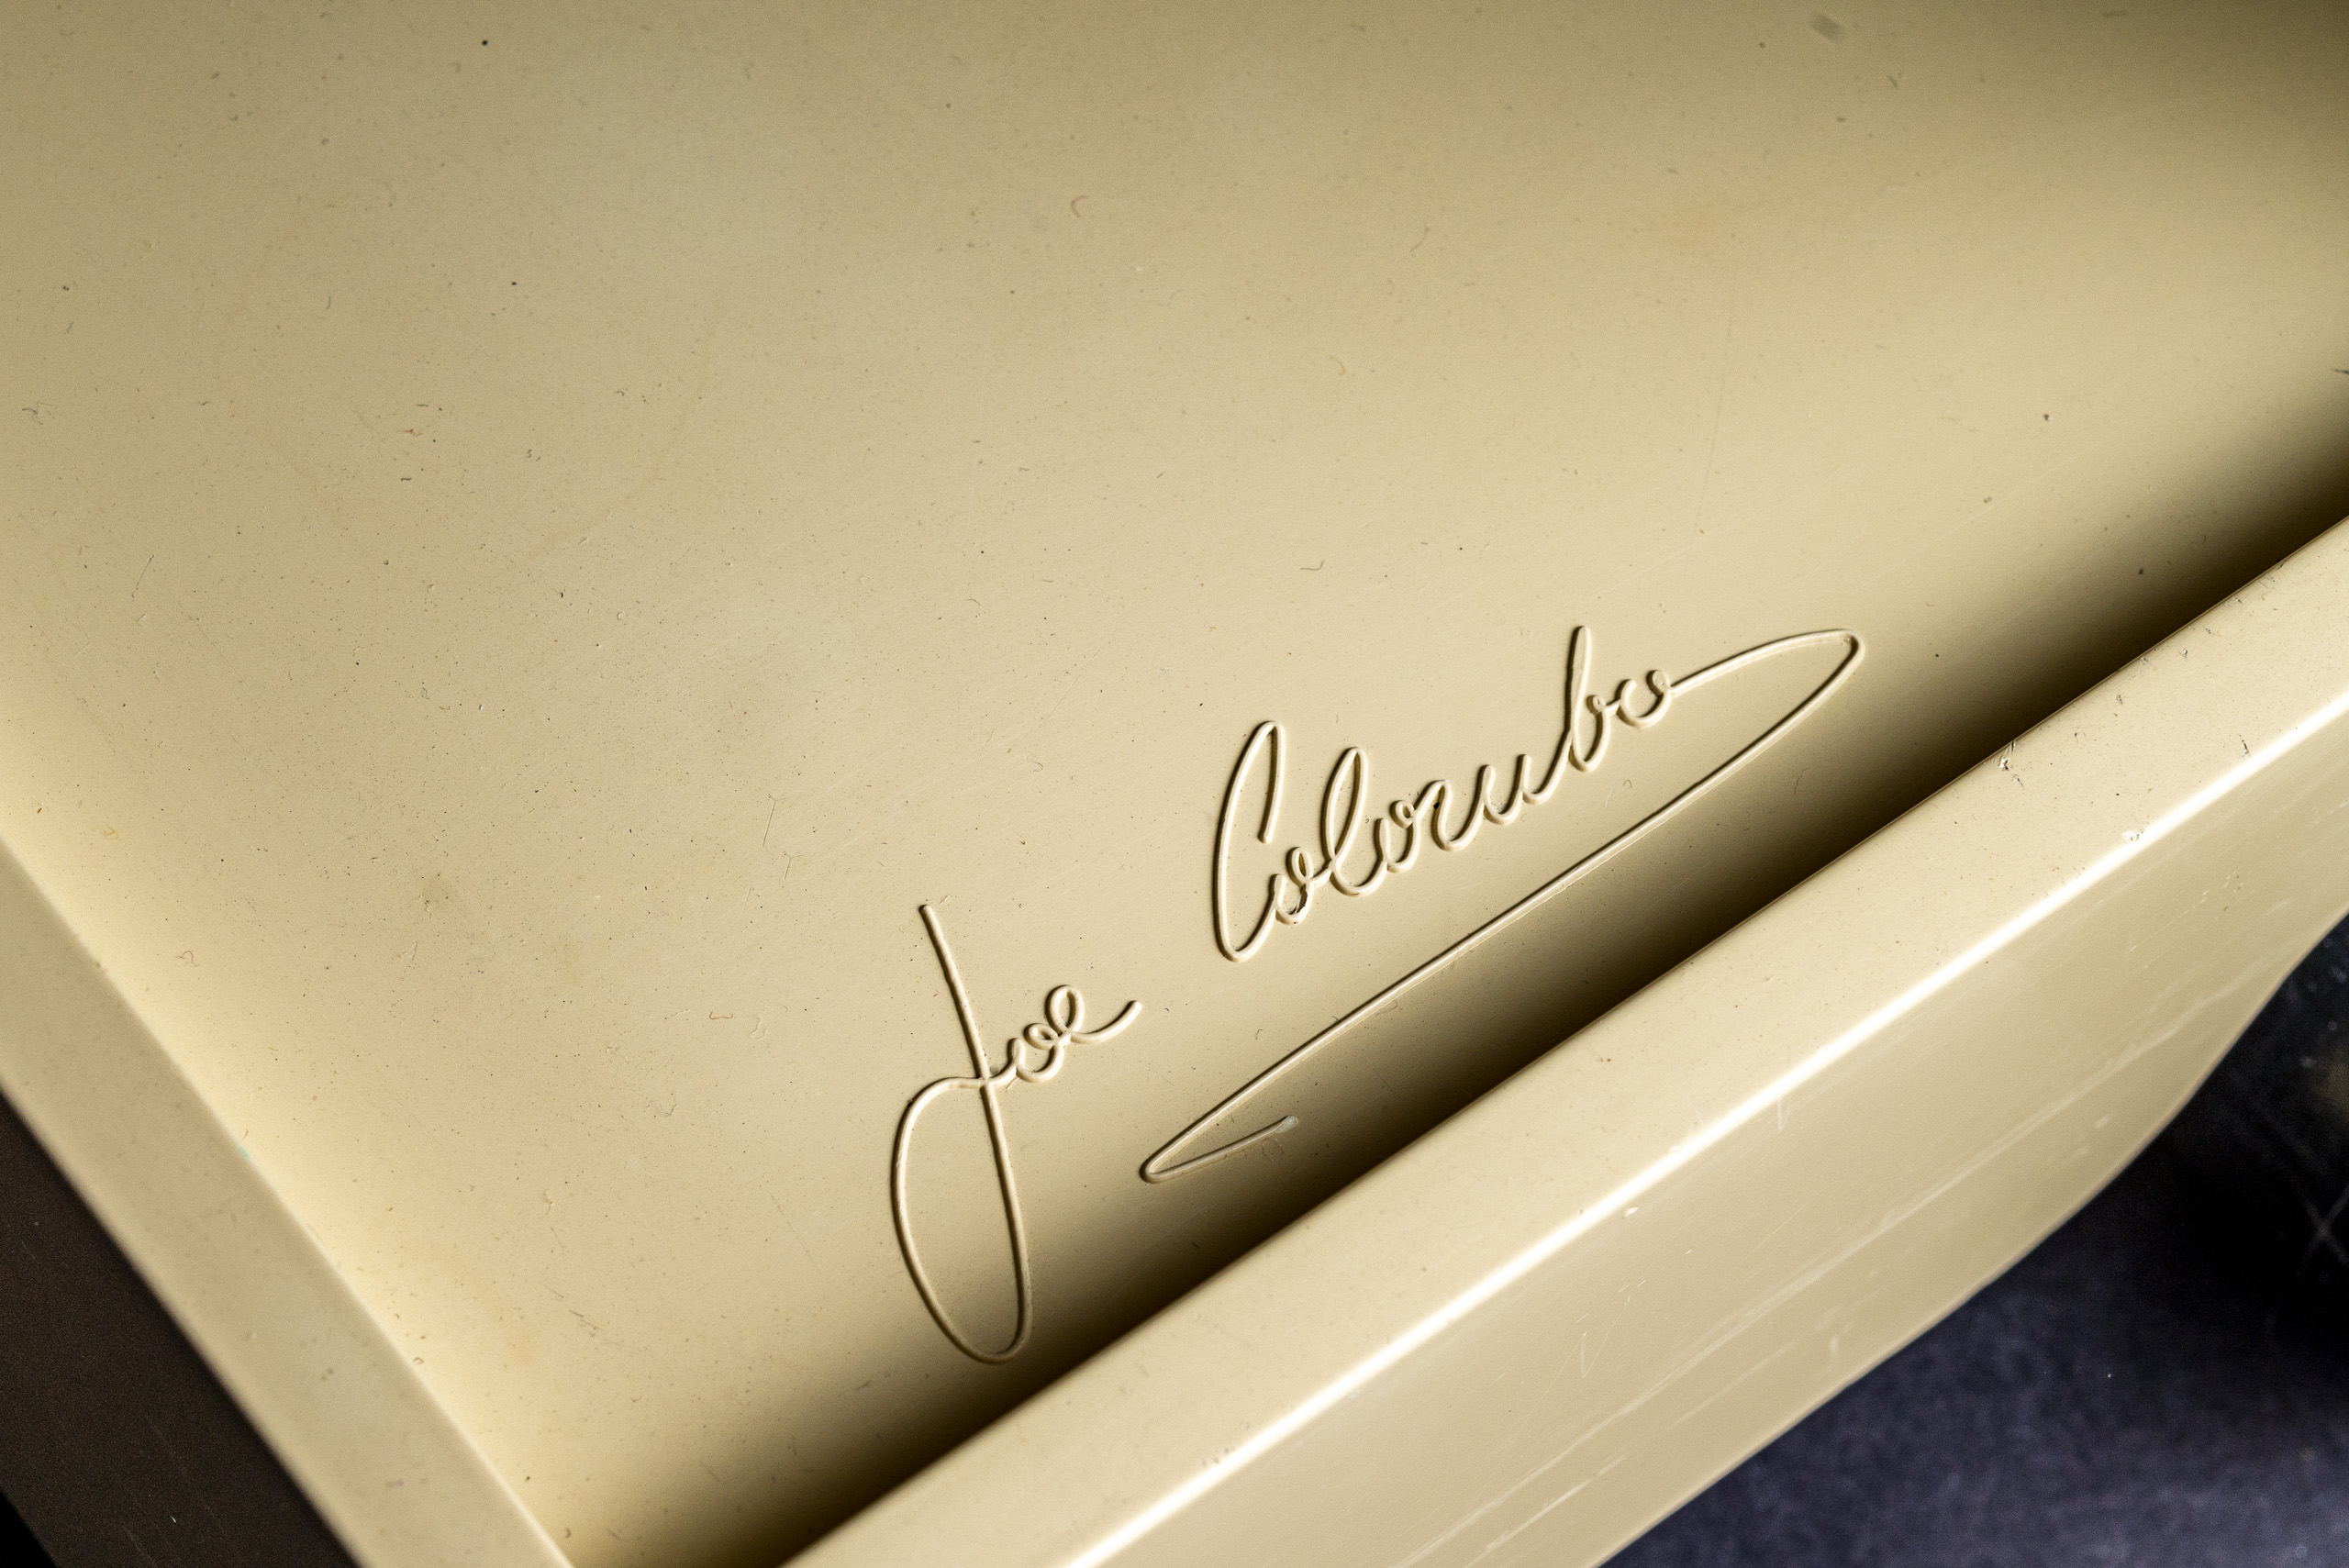 Joe Colombo signature on bottom tray